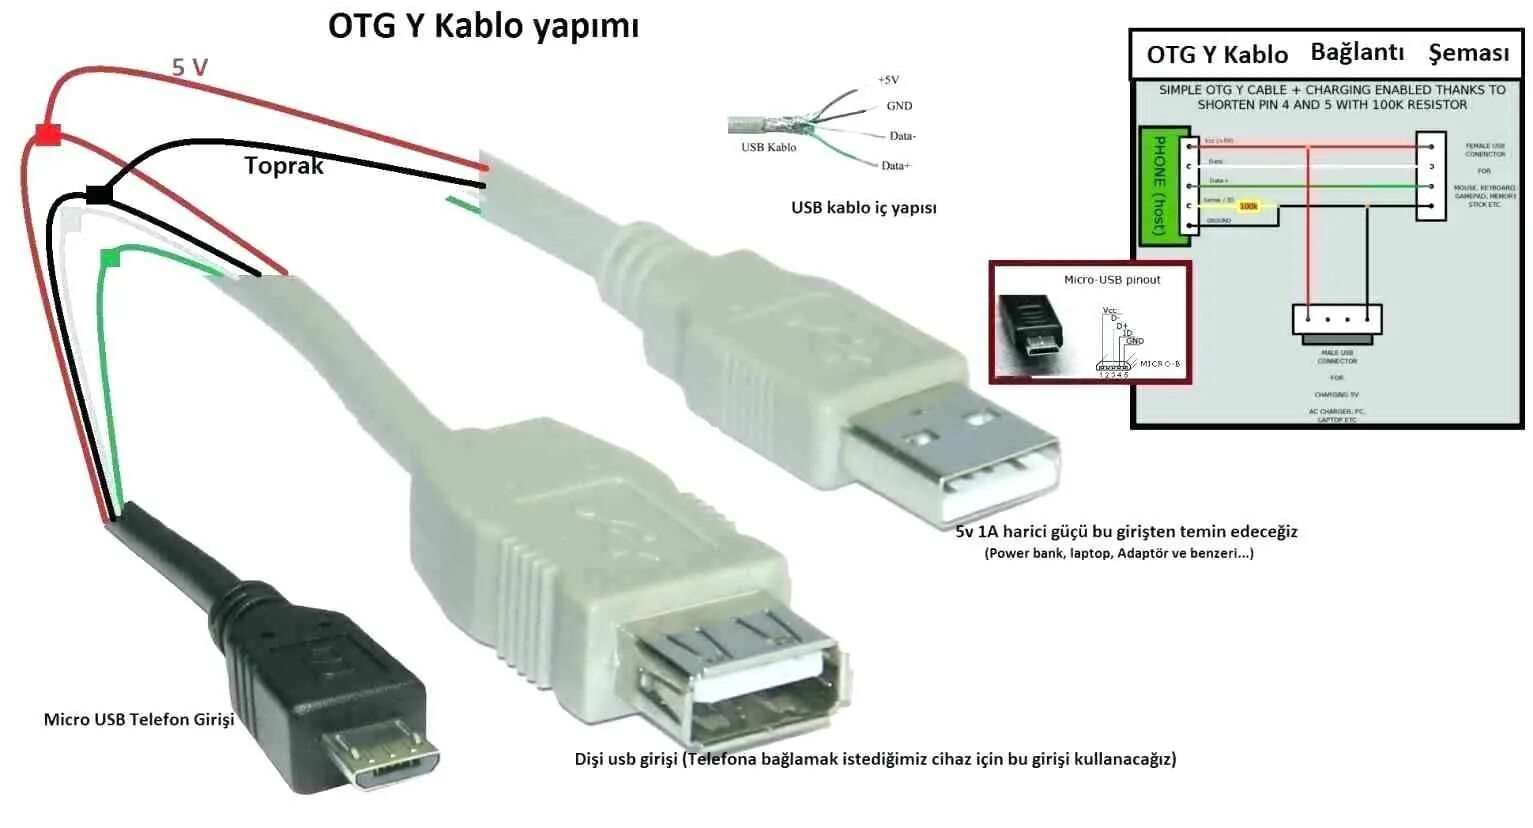 OTG кабель с внешним питанием схема. Переходник с HDMI на USB 2.0 схема. OTG переходник Micro USB распайка. OTG кабель с питанием схема.